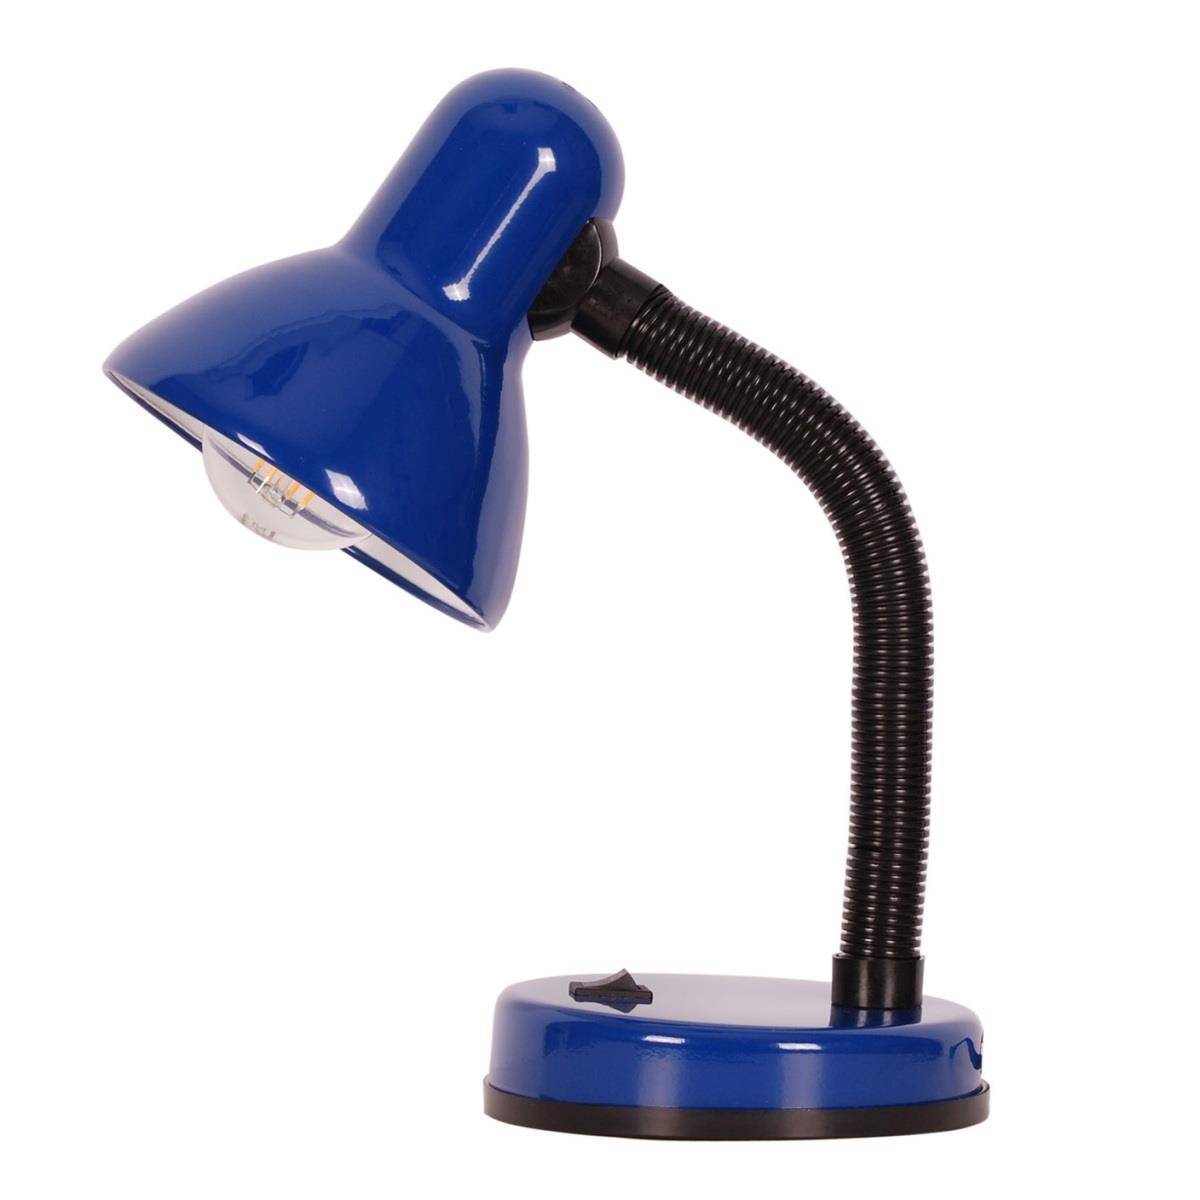 Lampka biurkowa K-MT-203 niebieska z serii CARIBA